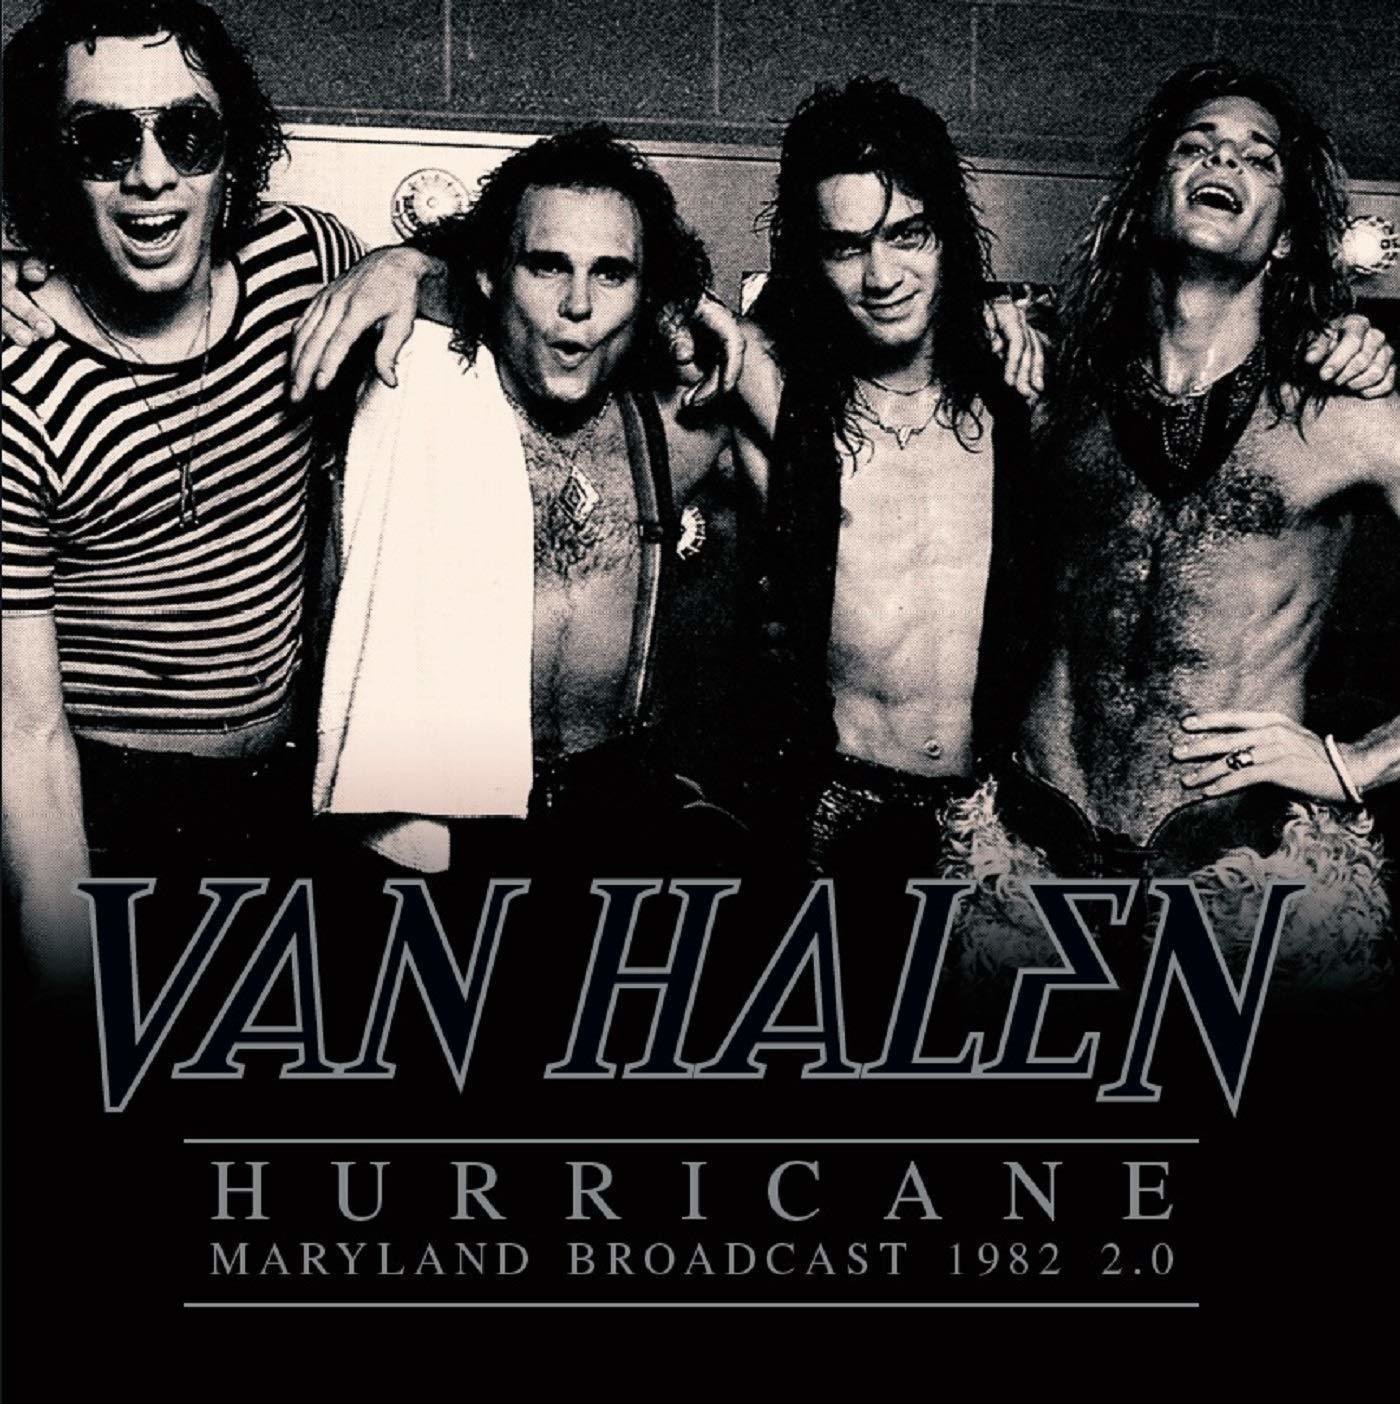 LP Van Halen - Hurricane - Maryland Broadcast 1982 2.0 (2 LP)